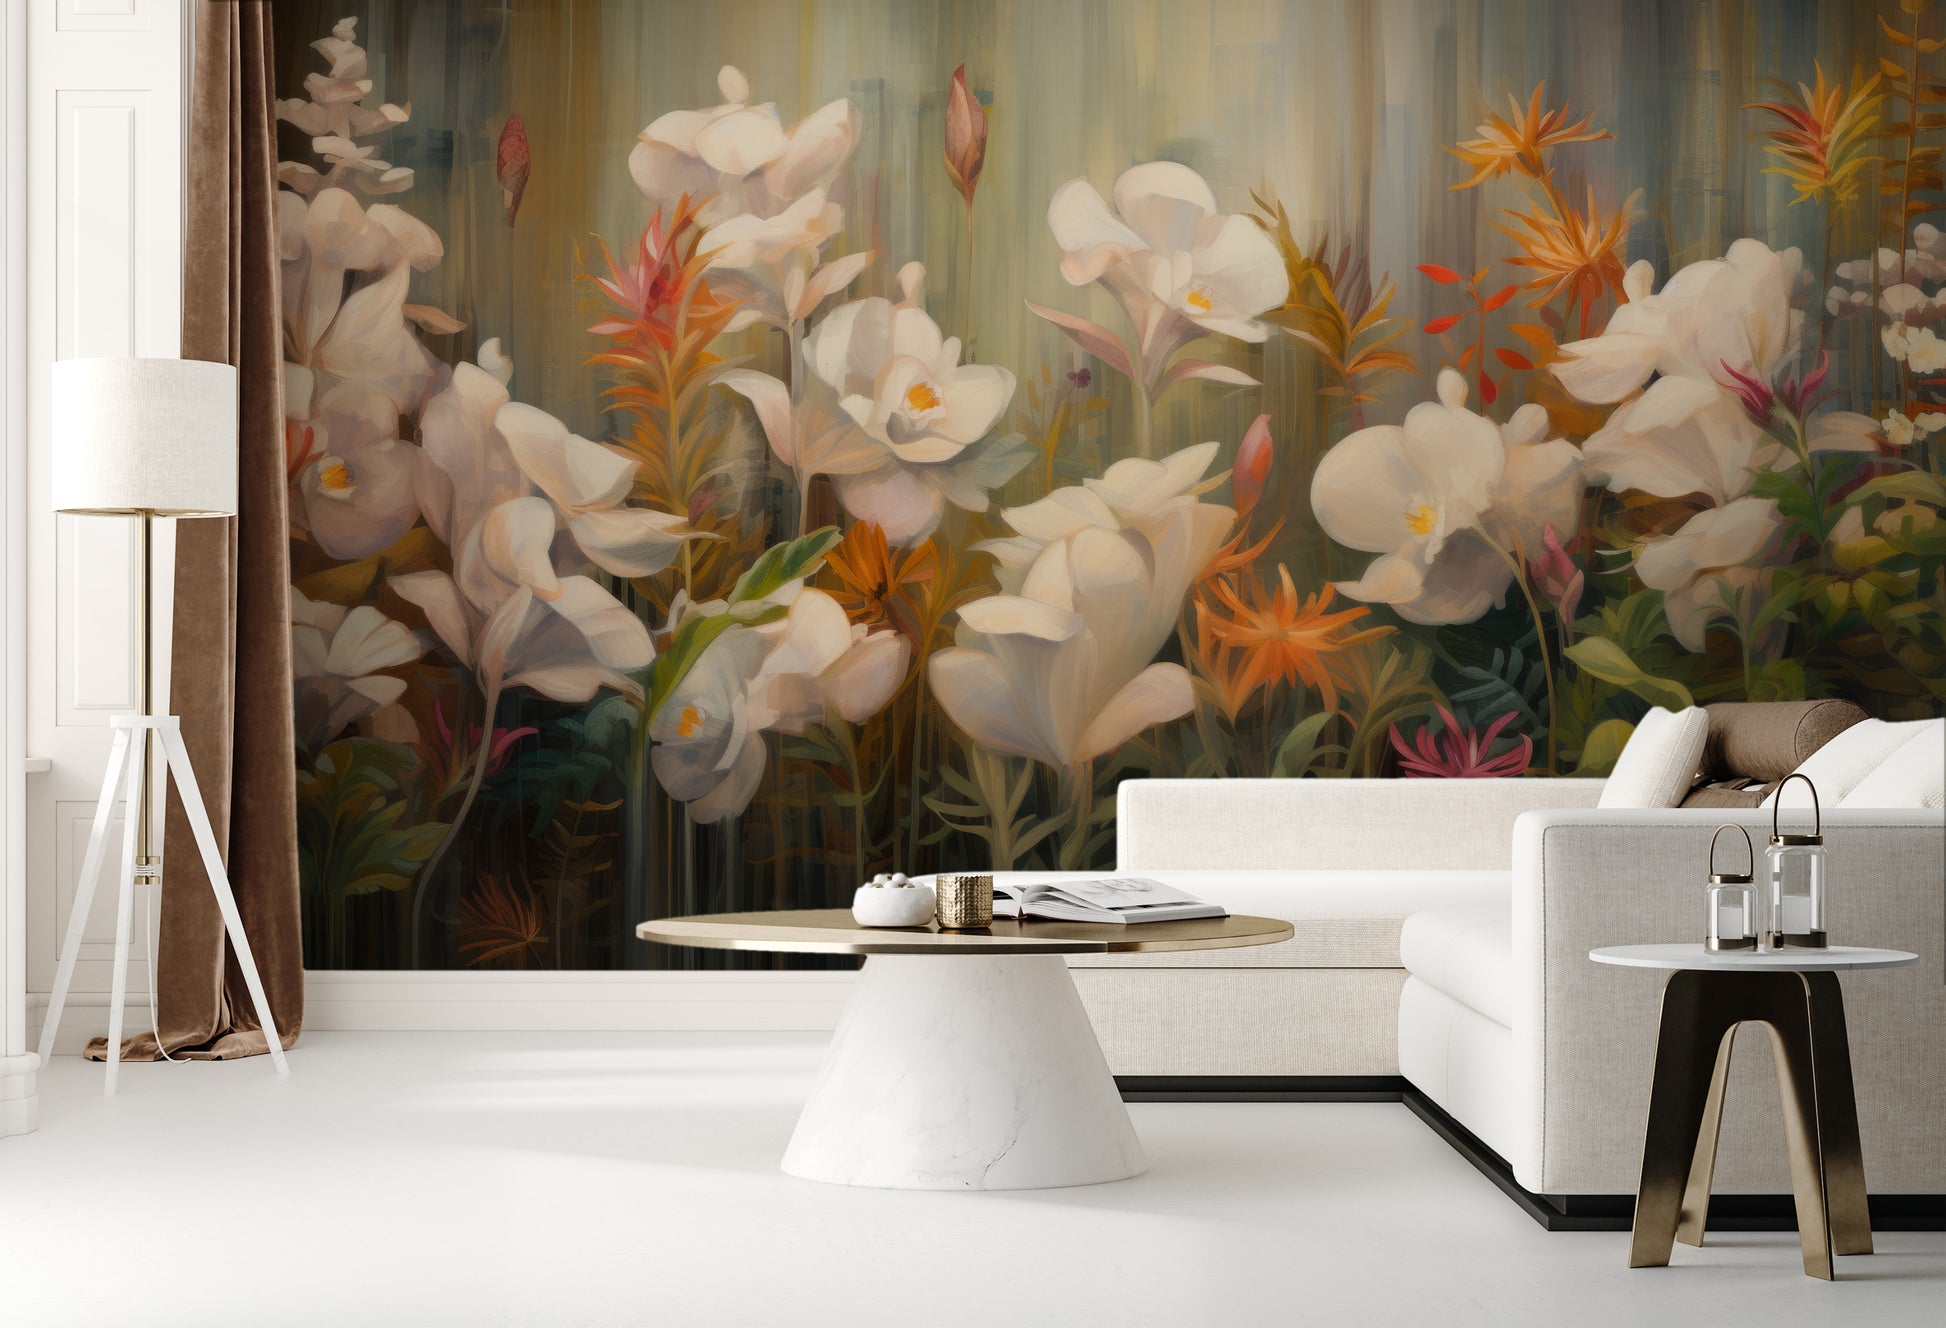 Wzór fototapety malowanej o nazwie Rainforest Orchid Delight pokazanej w aranżacji wnętrza.